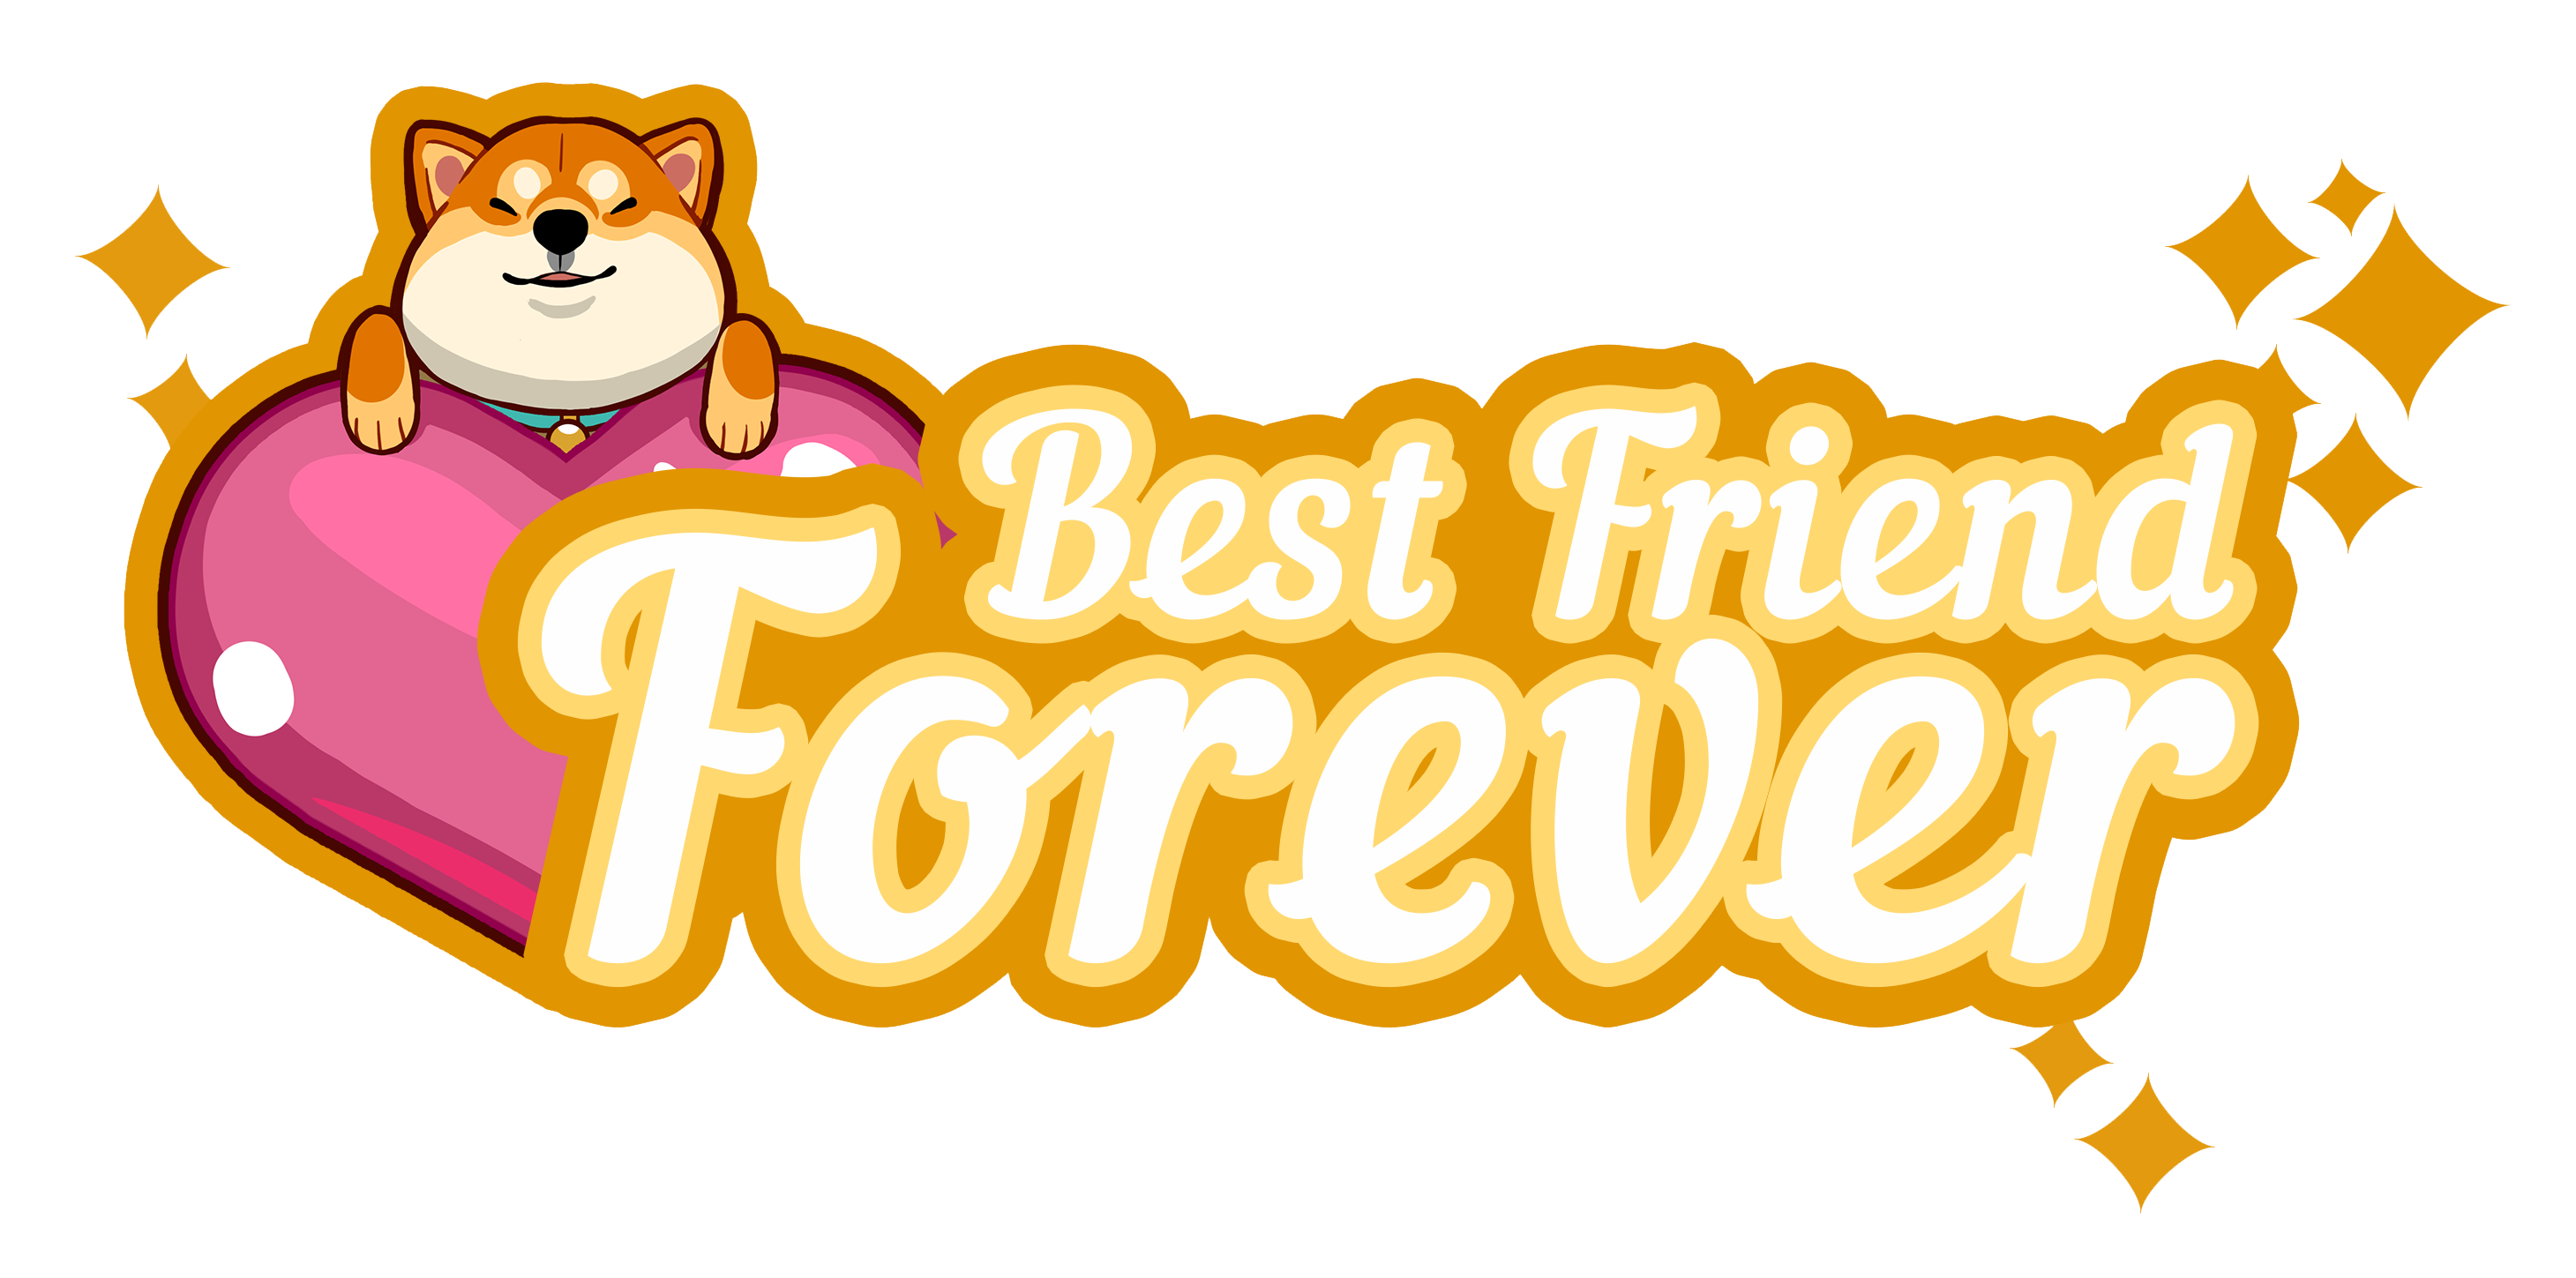 Best friends надпись. Best friends Forever надпись. Best friends на прозрачном фоне. Логотип френдс.